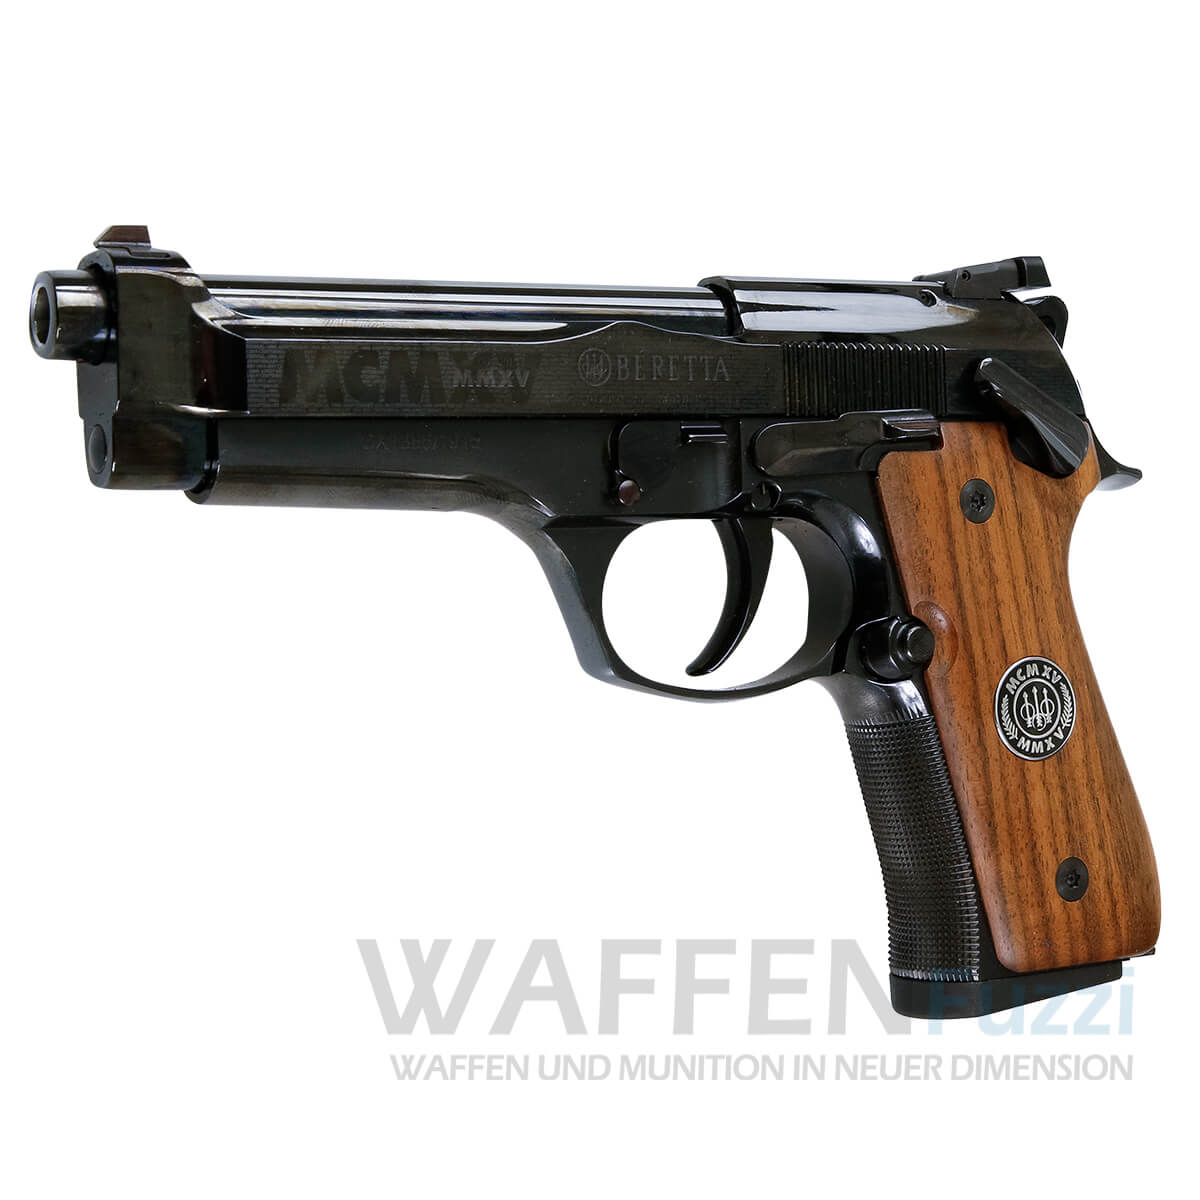 Beretta 92 Centennial Sonderedition 9mm Luger begrenzt verfügbar bei Waffenfuzzi 